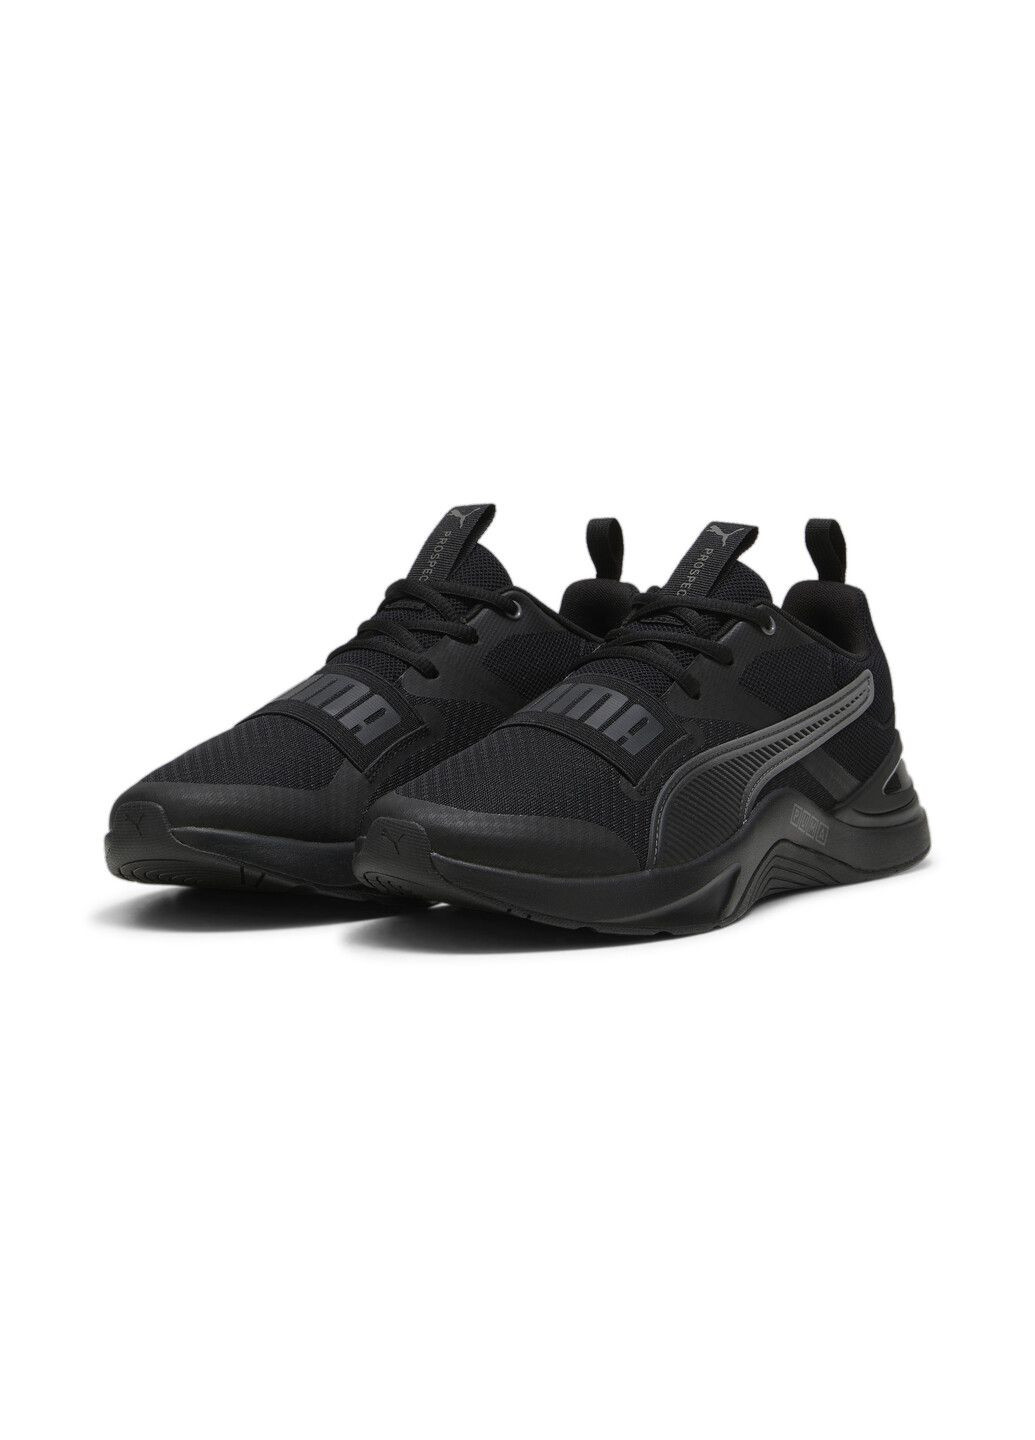 Черные всесезонные кроссовки prospect neo force training shoes Puma